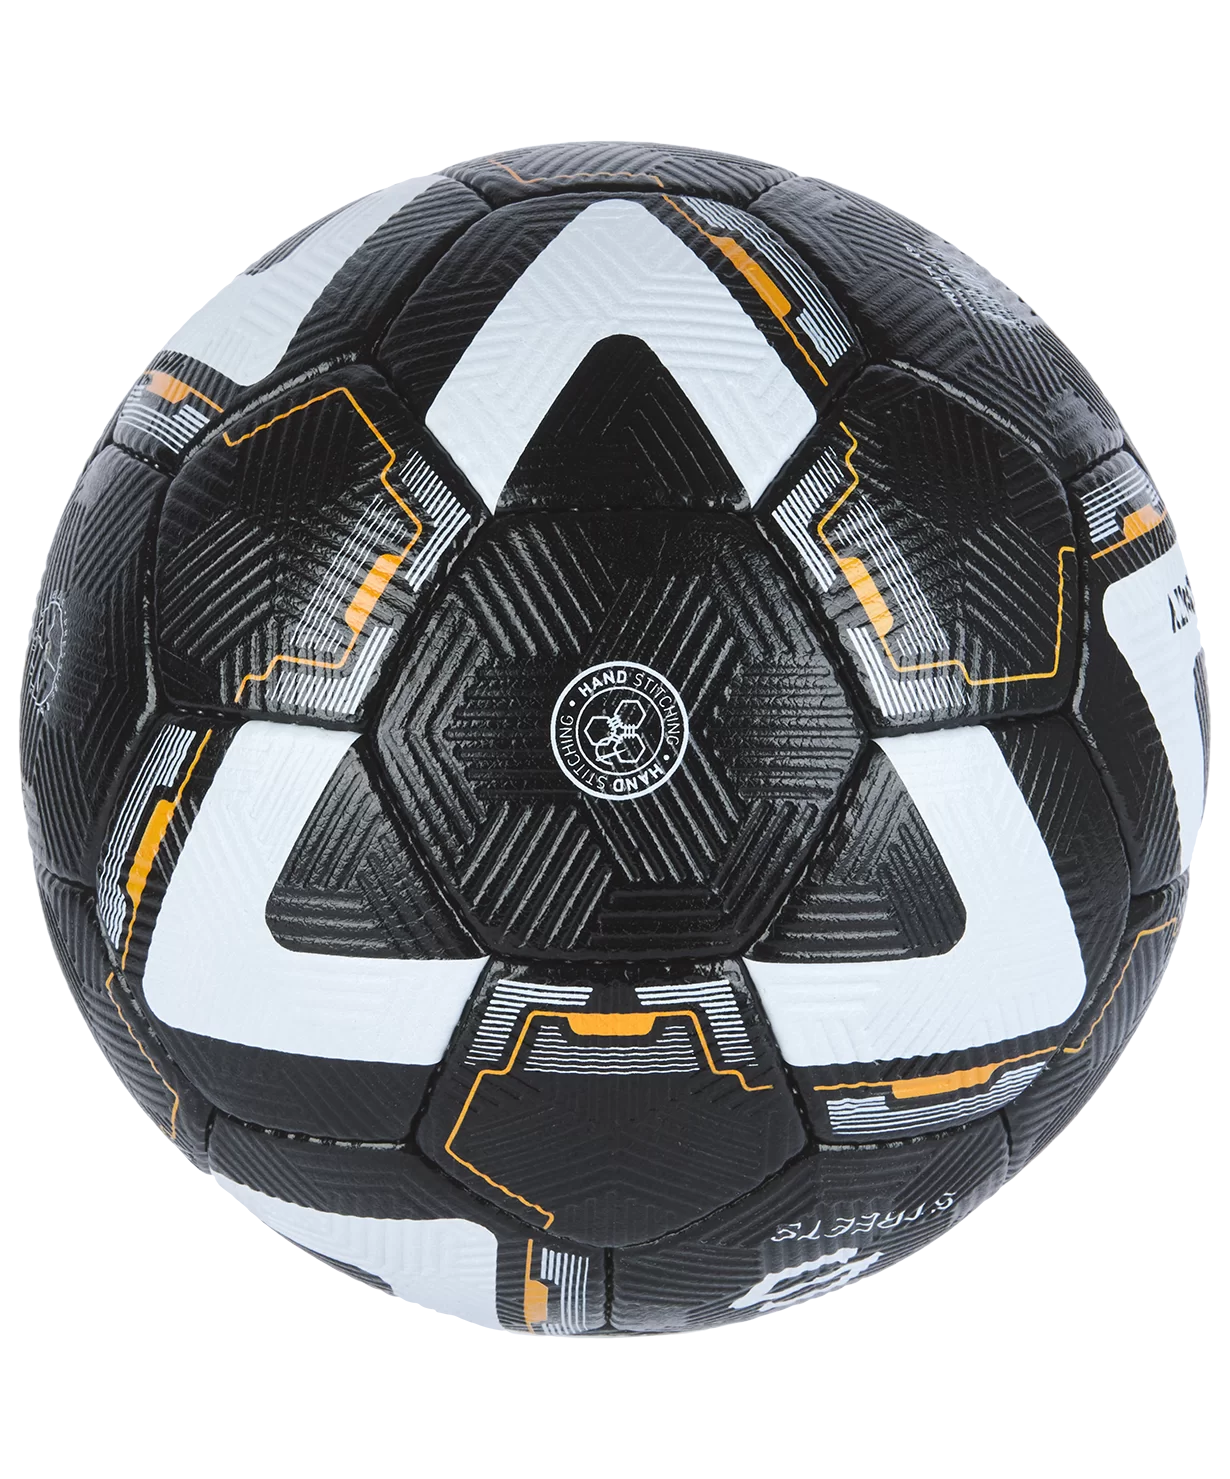 Реальное фото Мяч футбольный Jögel Trinity №5 (BC20)  УТ-00017604 от магазина СпортСЕ